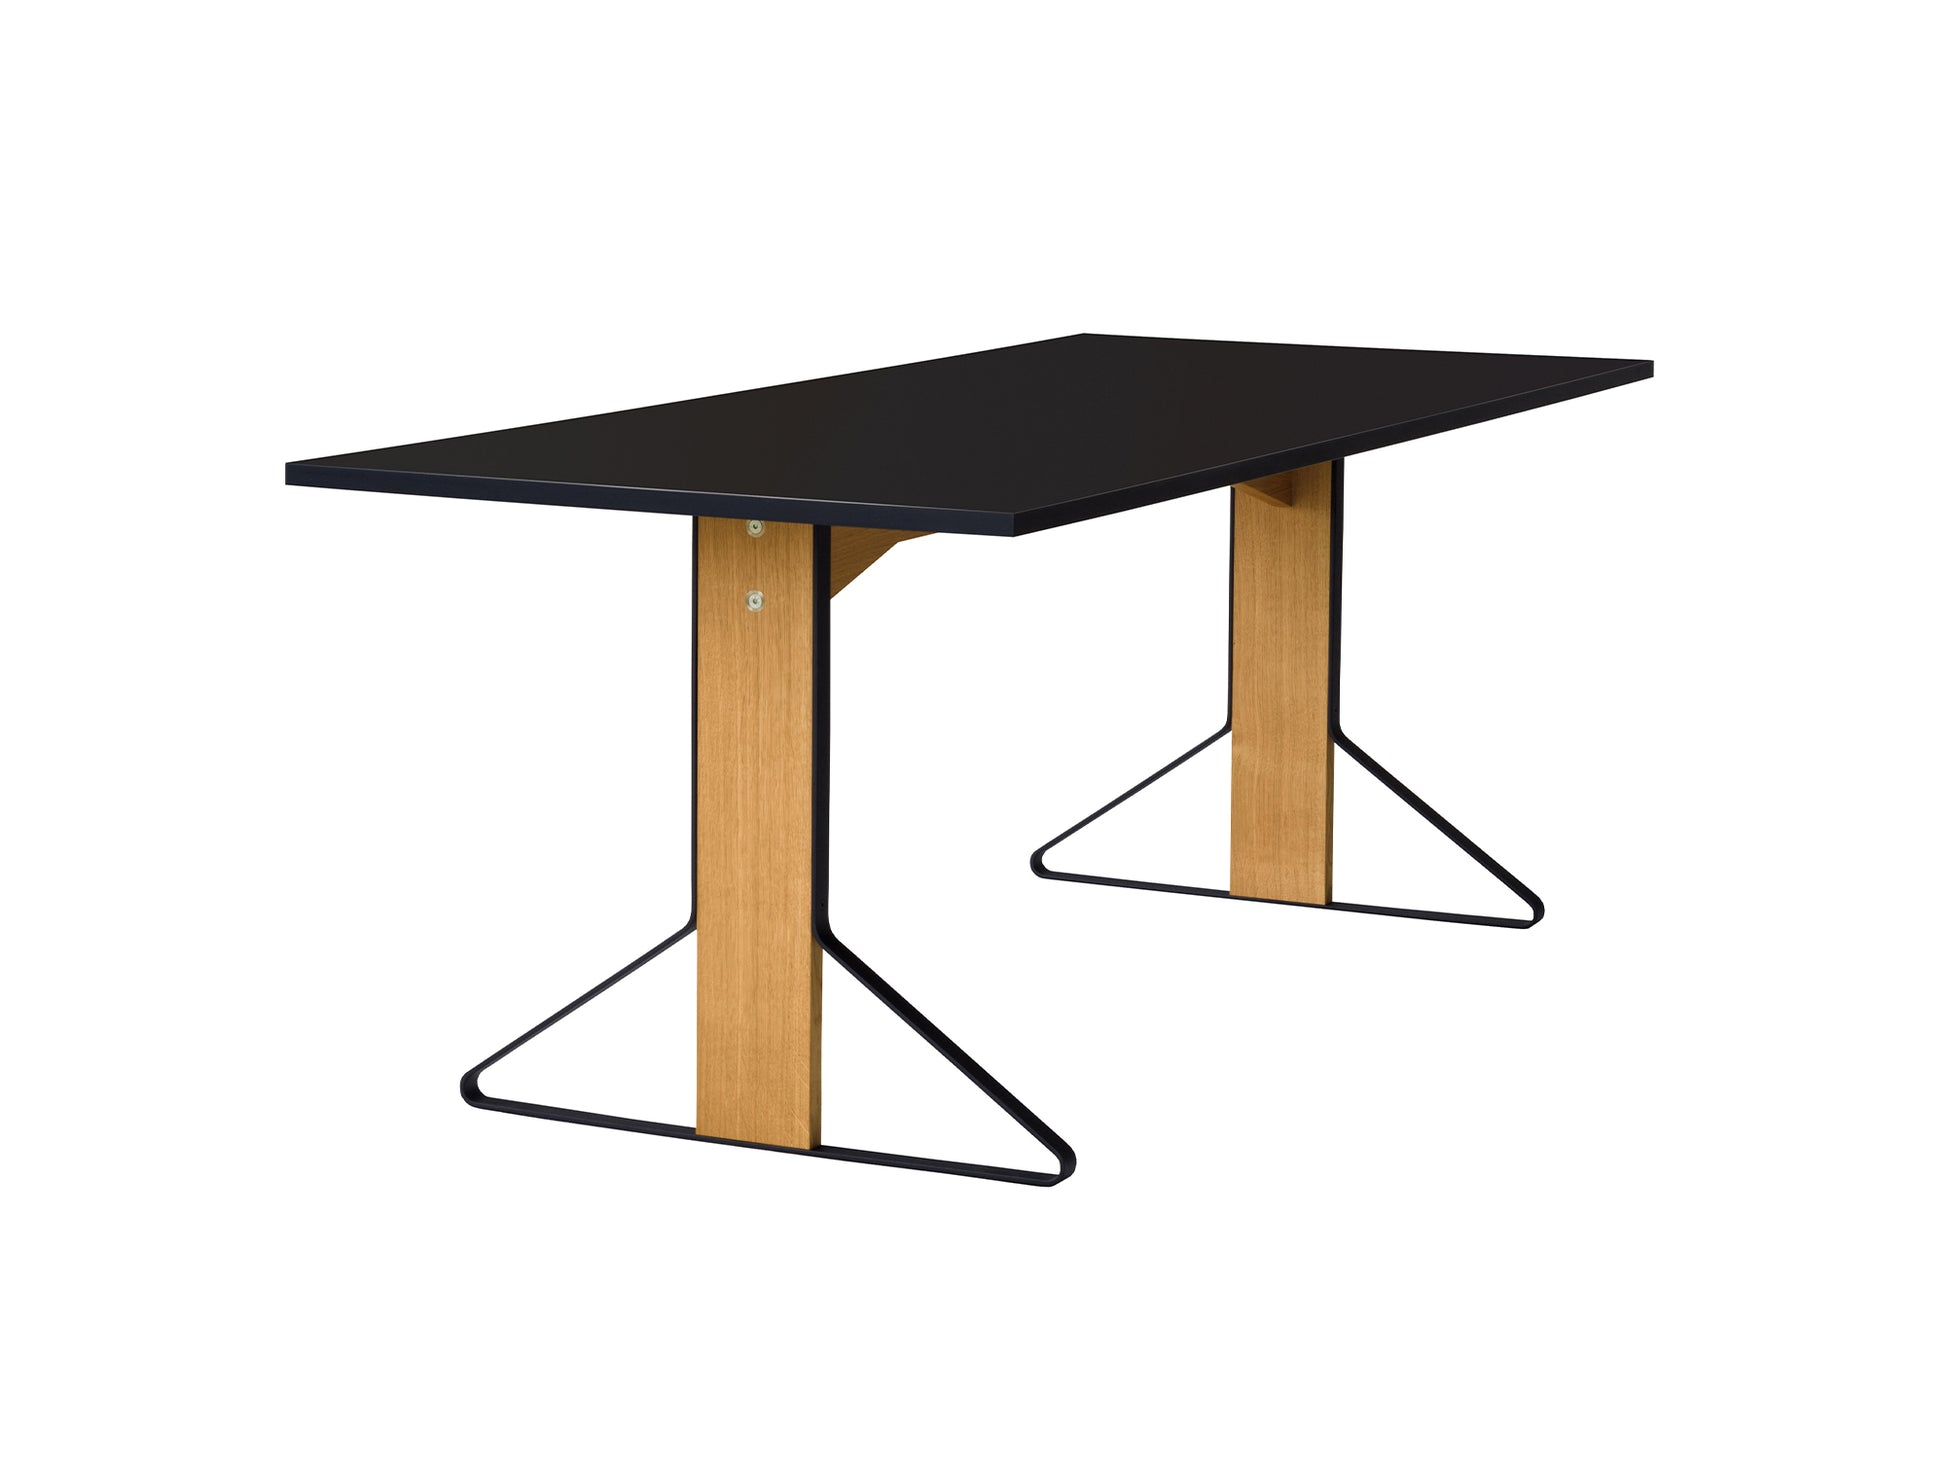 Kaari Table Rectangular by Artek - 200 x 85 cm (REB 001) / Black Gloss HPL Tabletop / Natural Oak Base